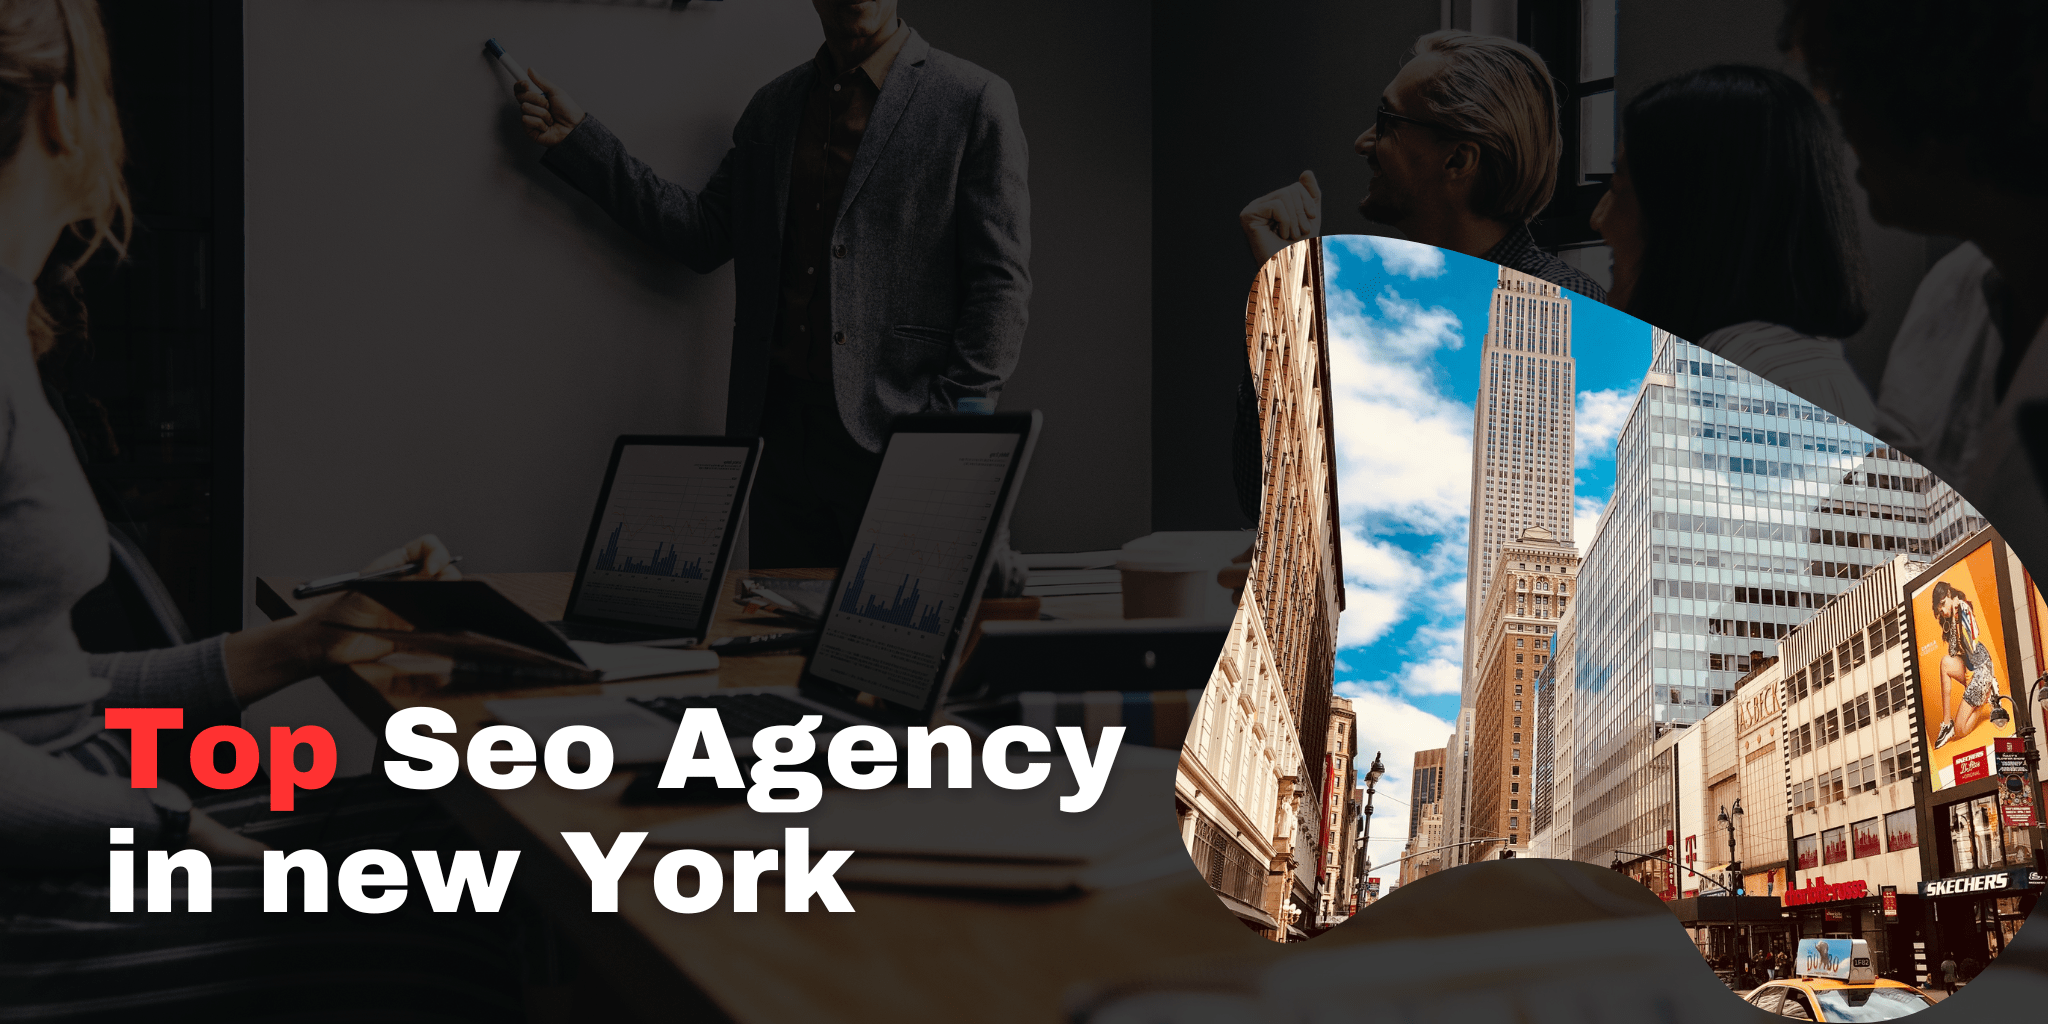 Top Seo Agency in new York